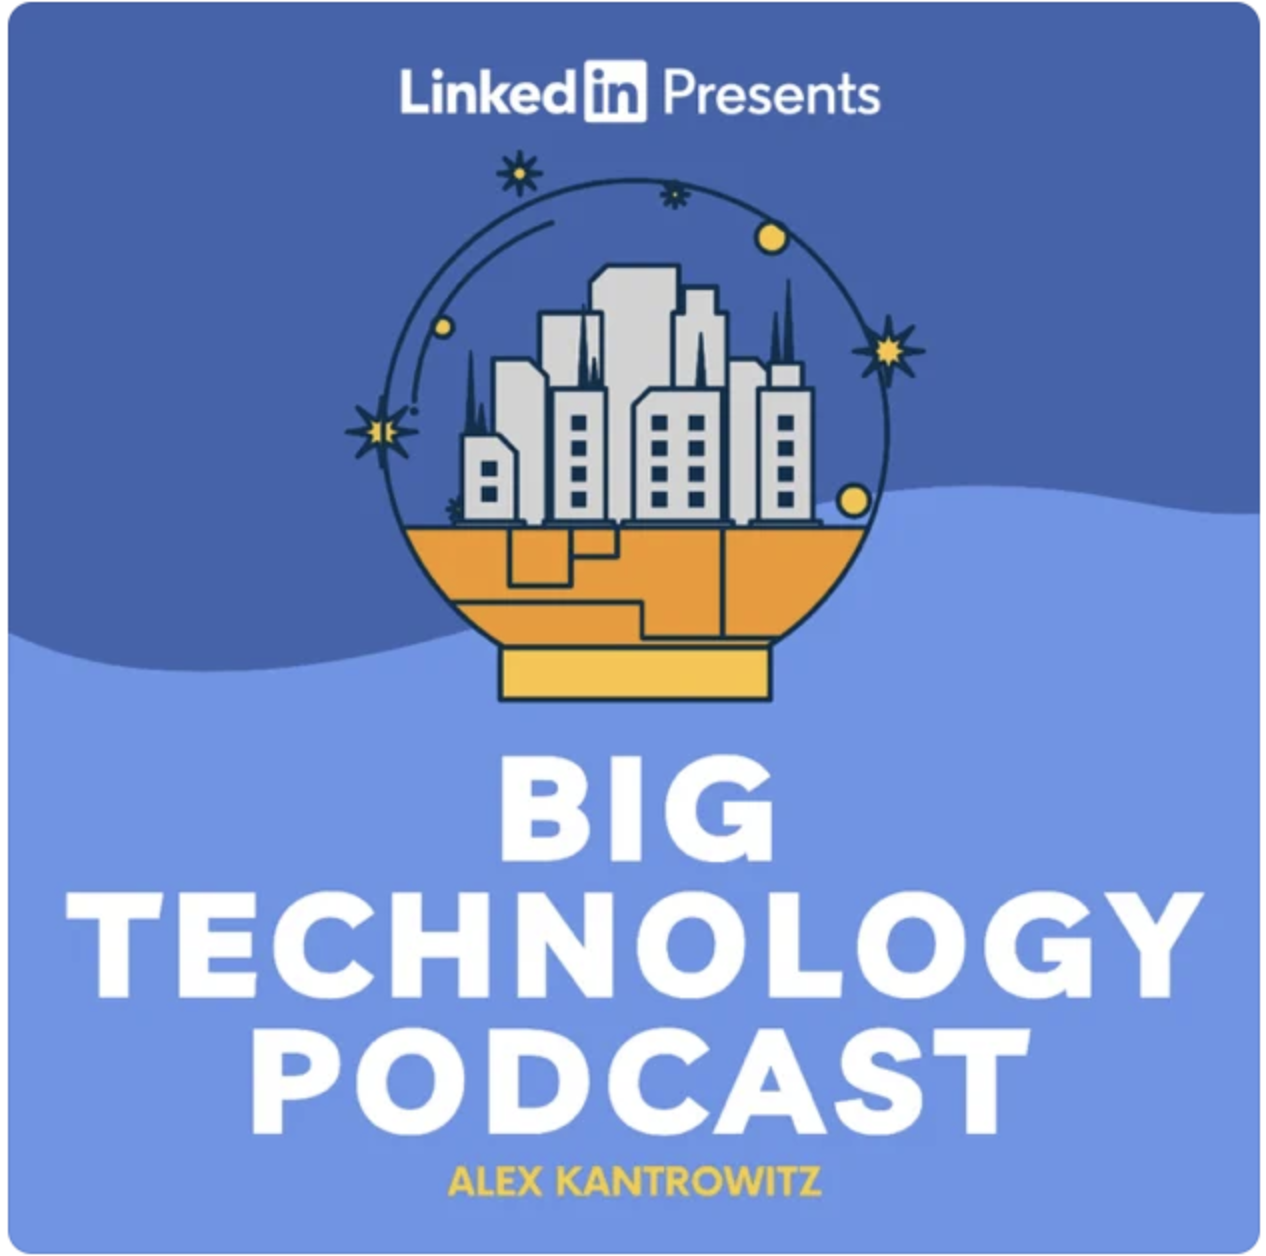 LinkedIn Presents Big Technology Podcast, Alex Kantrowitz